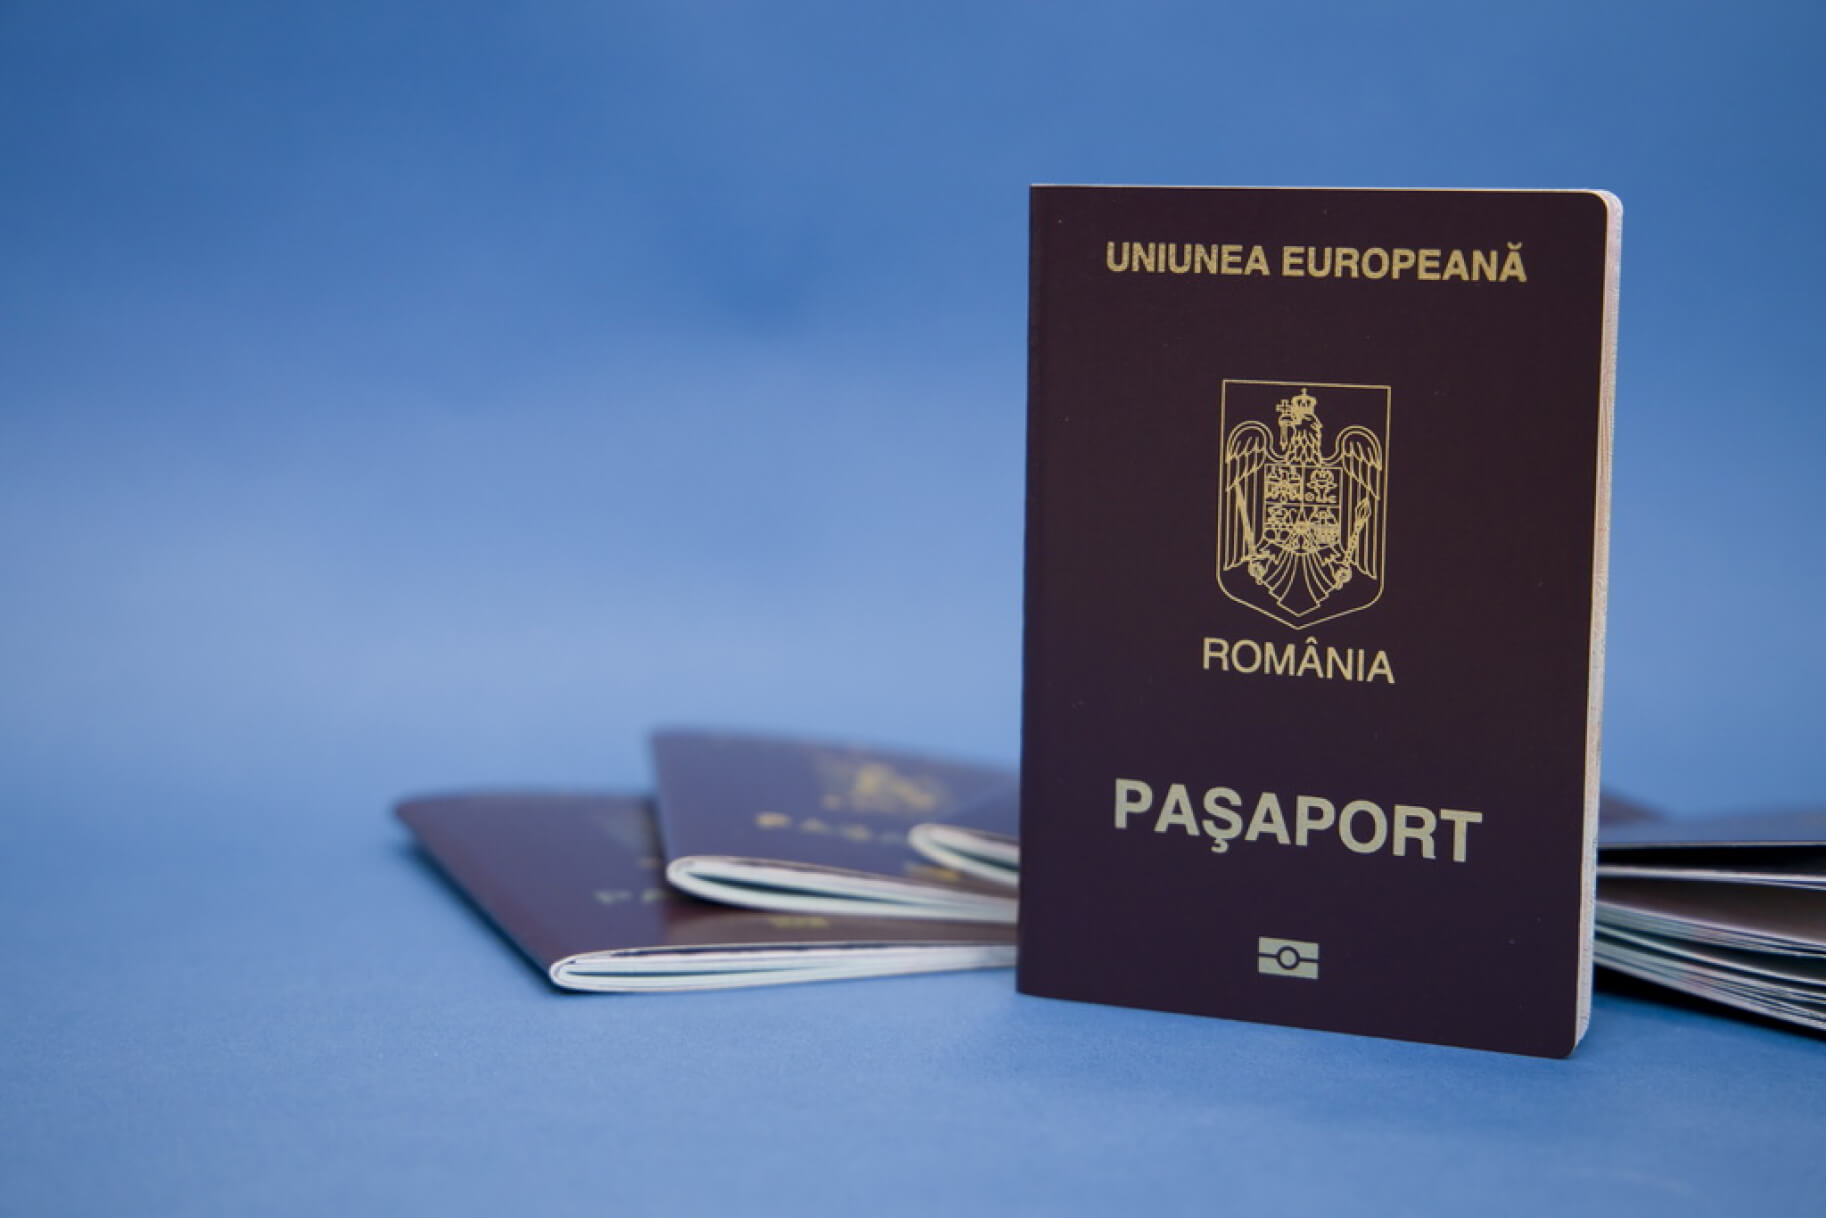 Гражданство Румынии: как получить румынское гражданство и оформить румынский паспорт